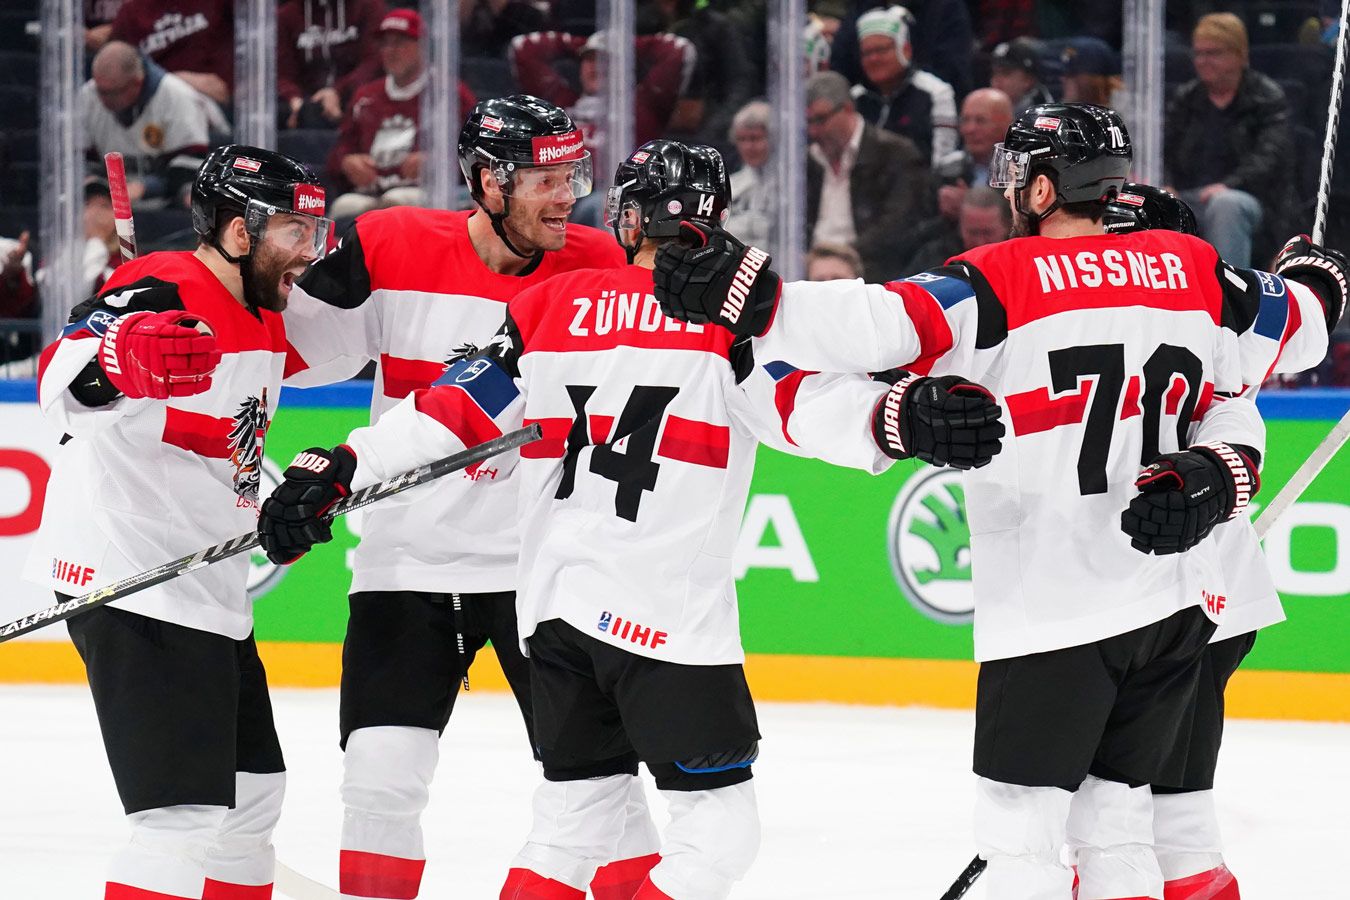 Австрия — главная сенсация, смогла бы так Беларусь? Что творится на ЧМ-2022 по хоккею